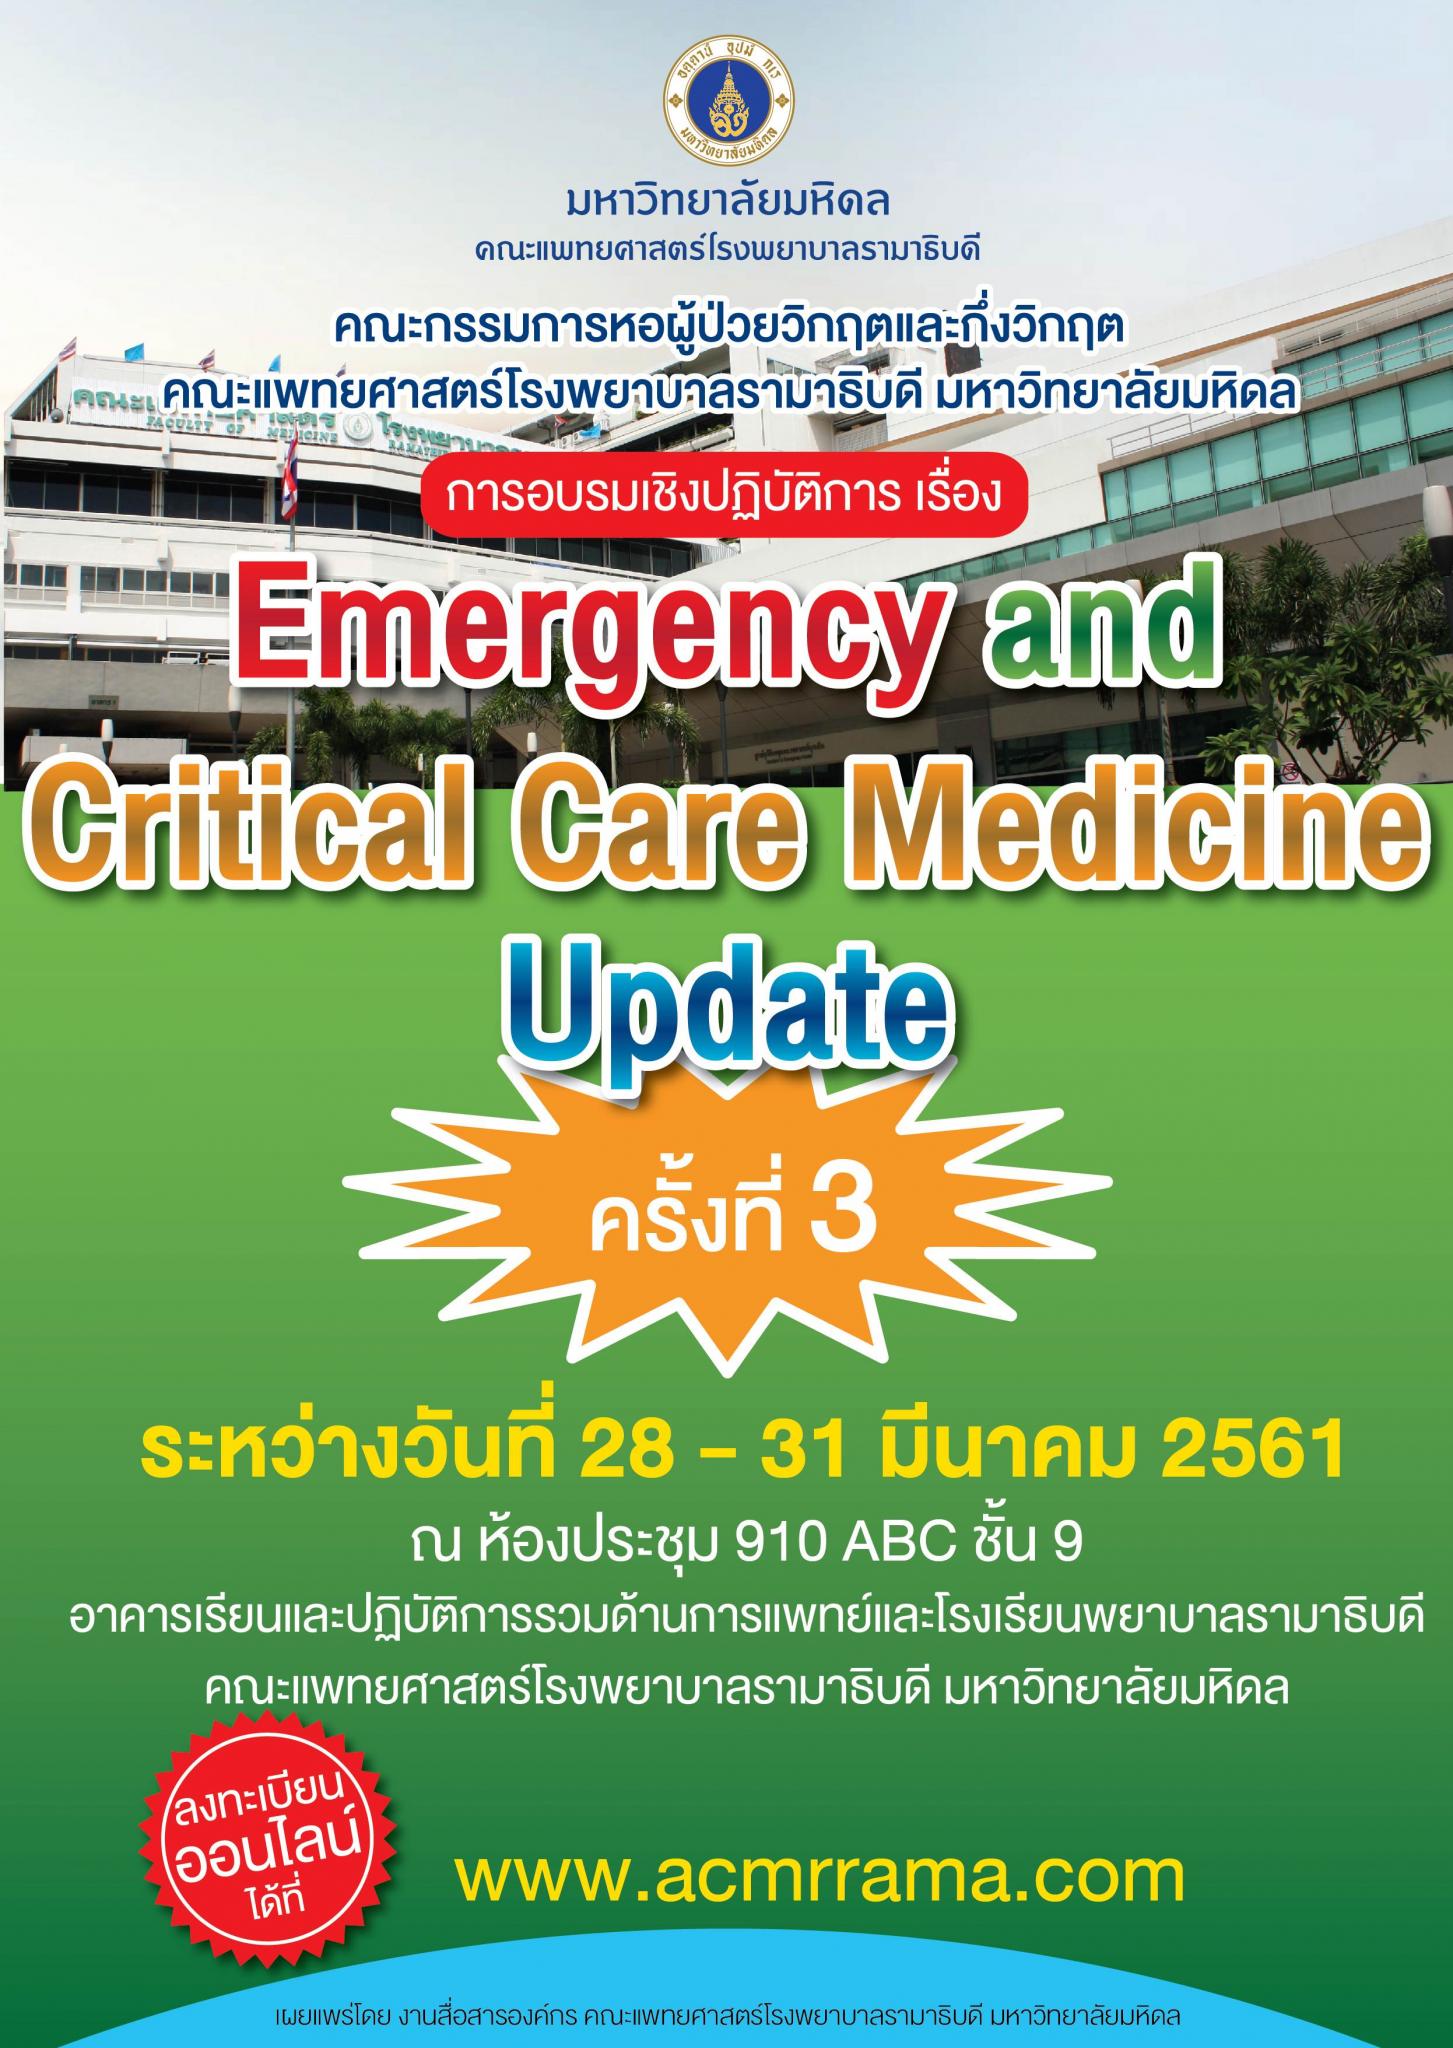 ขอเชิญเข้าร่วมอบรมเชิงปฏิบัติการ เรื่อง Emergency and Critical Care Medicine Update ครั้งที่ 3